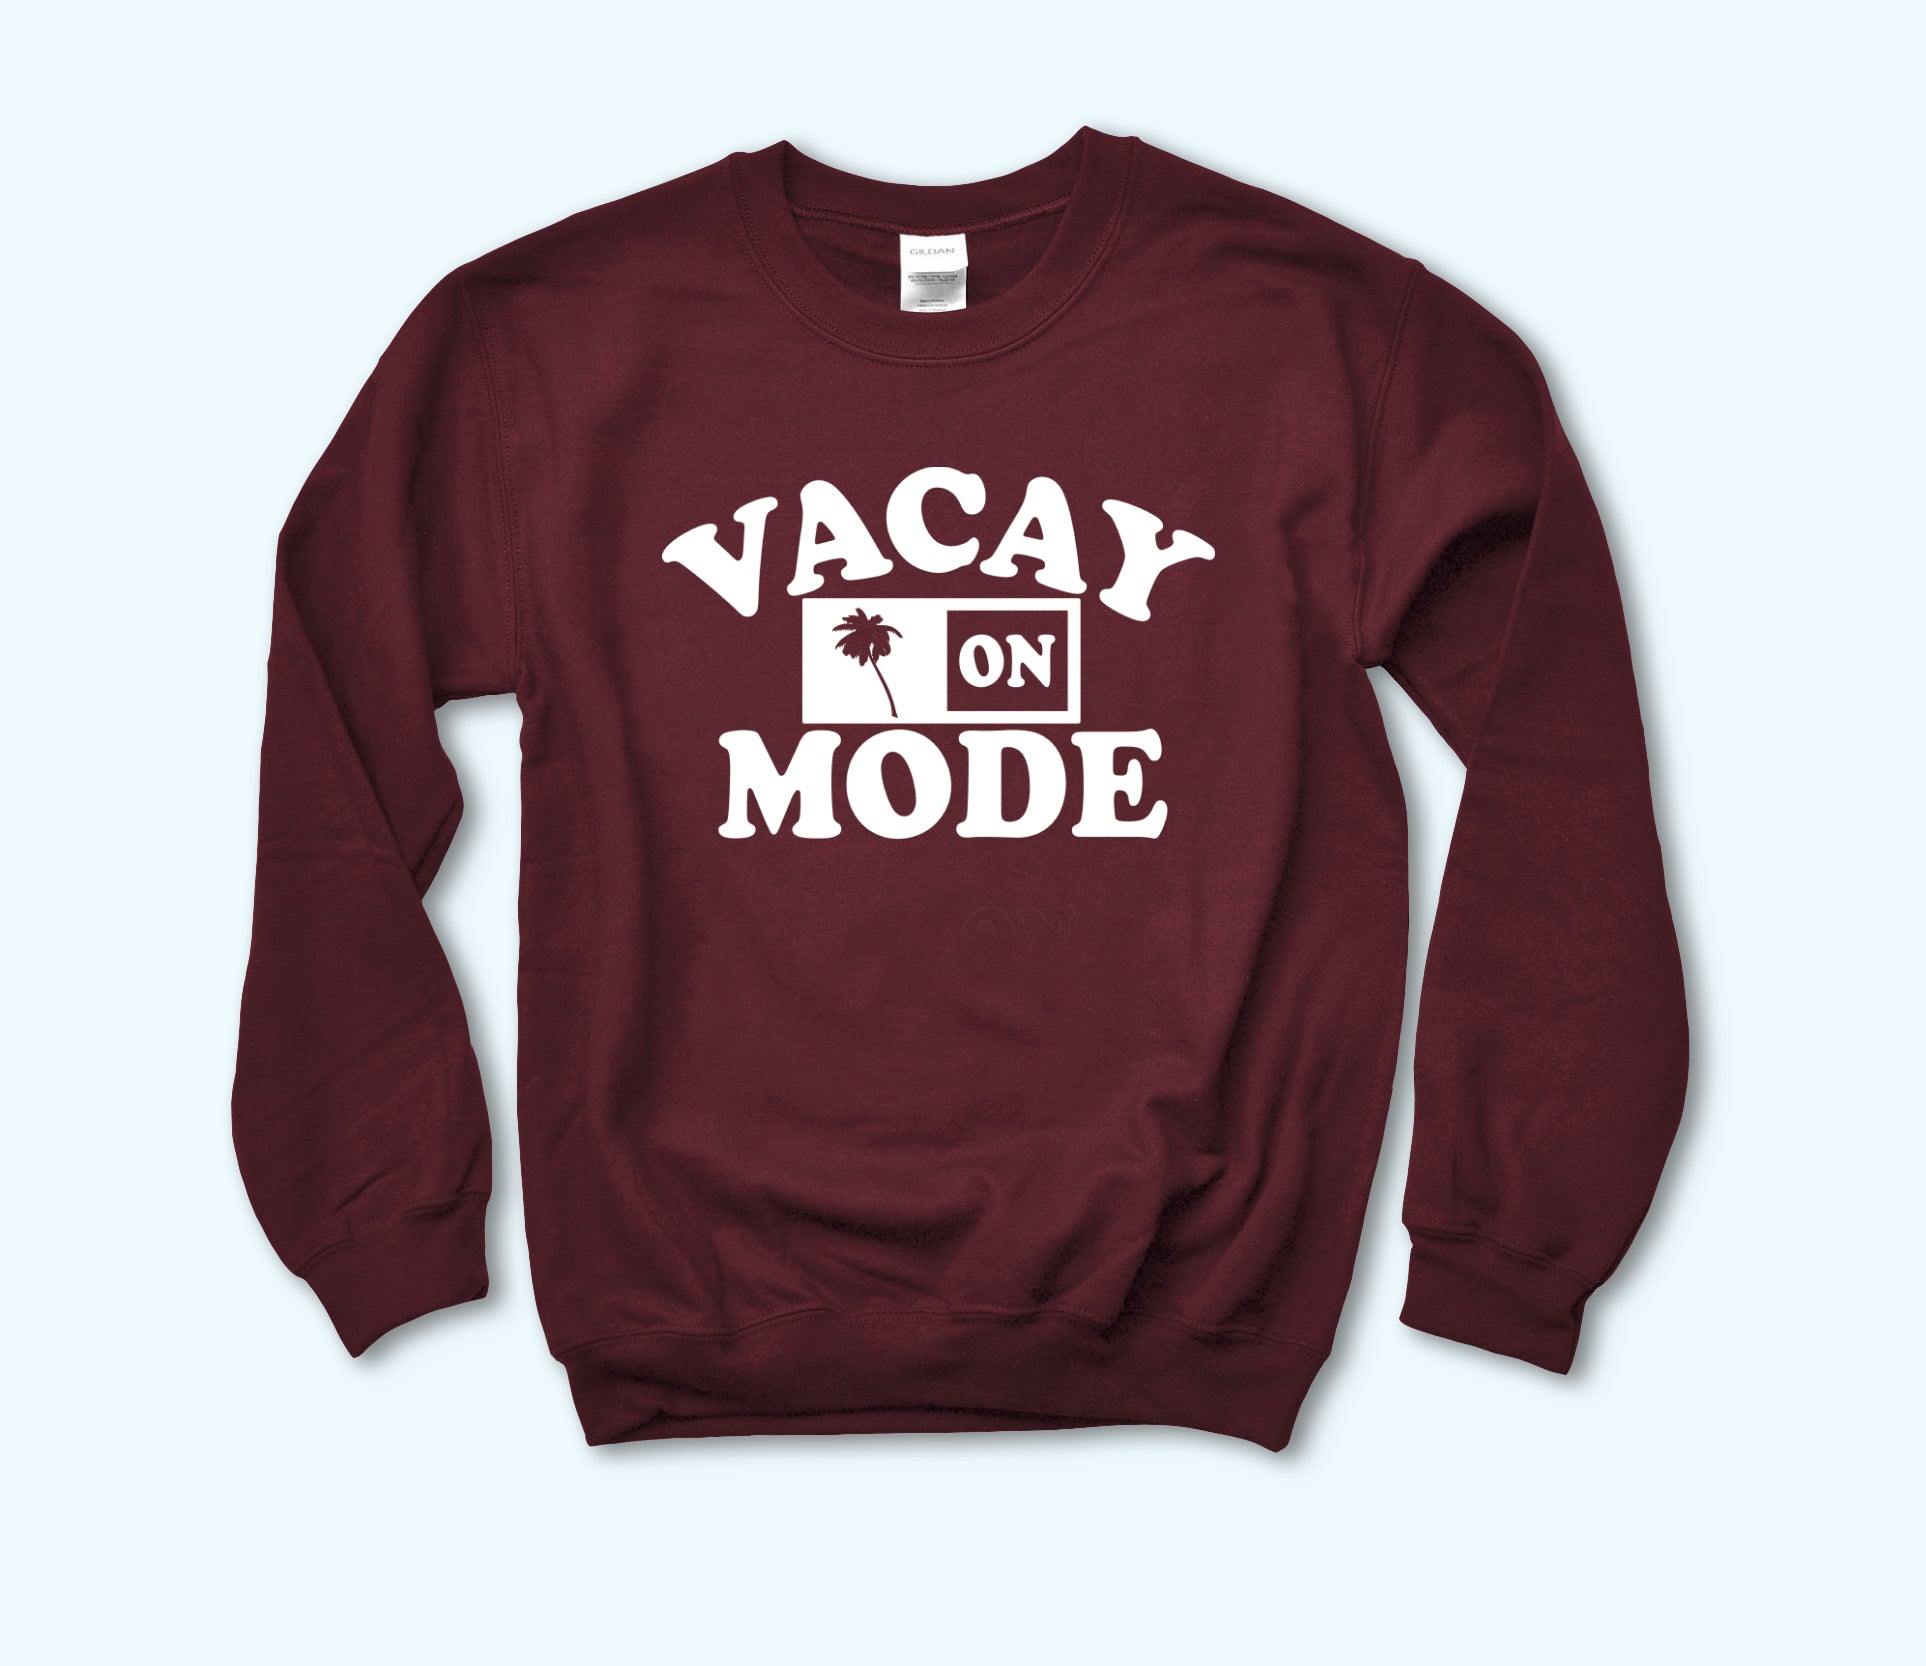 Vacay Mode On Sweatshirt